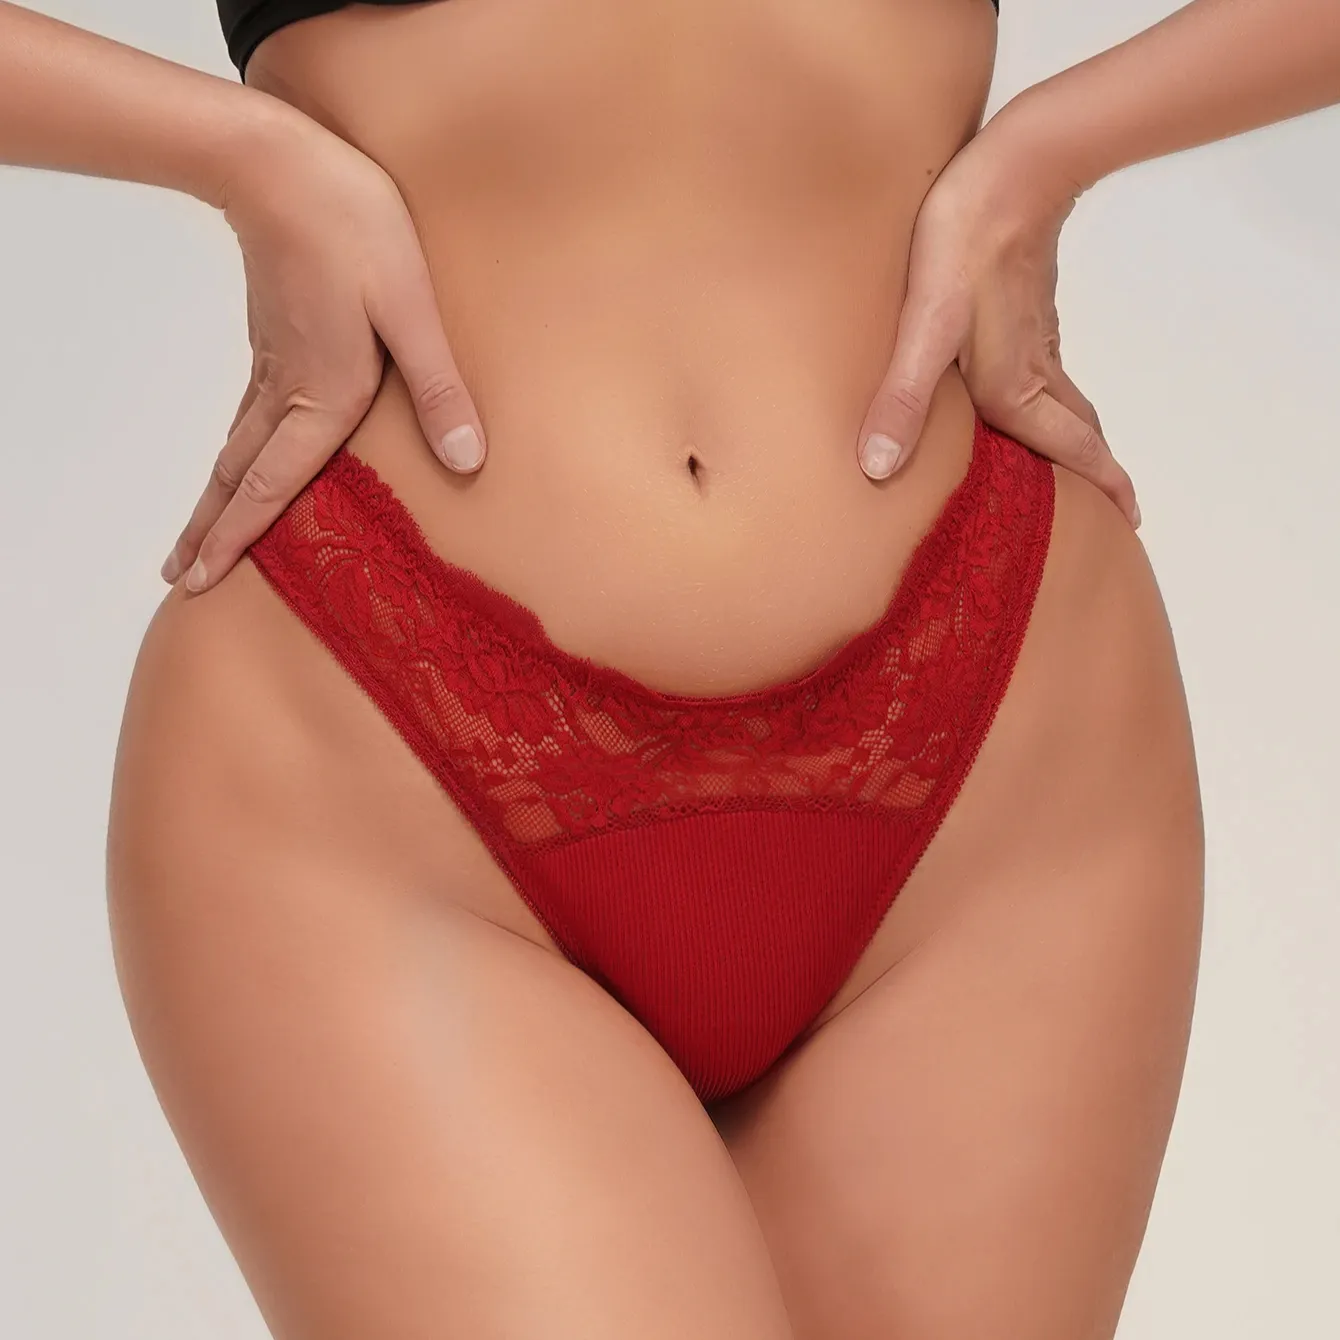 Venta caliente al por mayor Señoras maduras Mujeres Rojo G string Bikini Panty Tela de encaje Mujeres Sexy Tanga Bragas